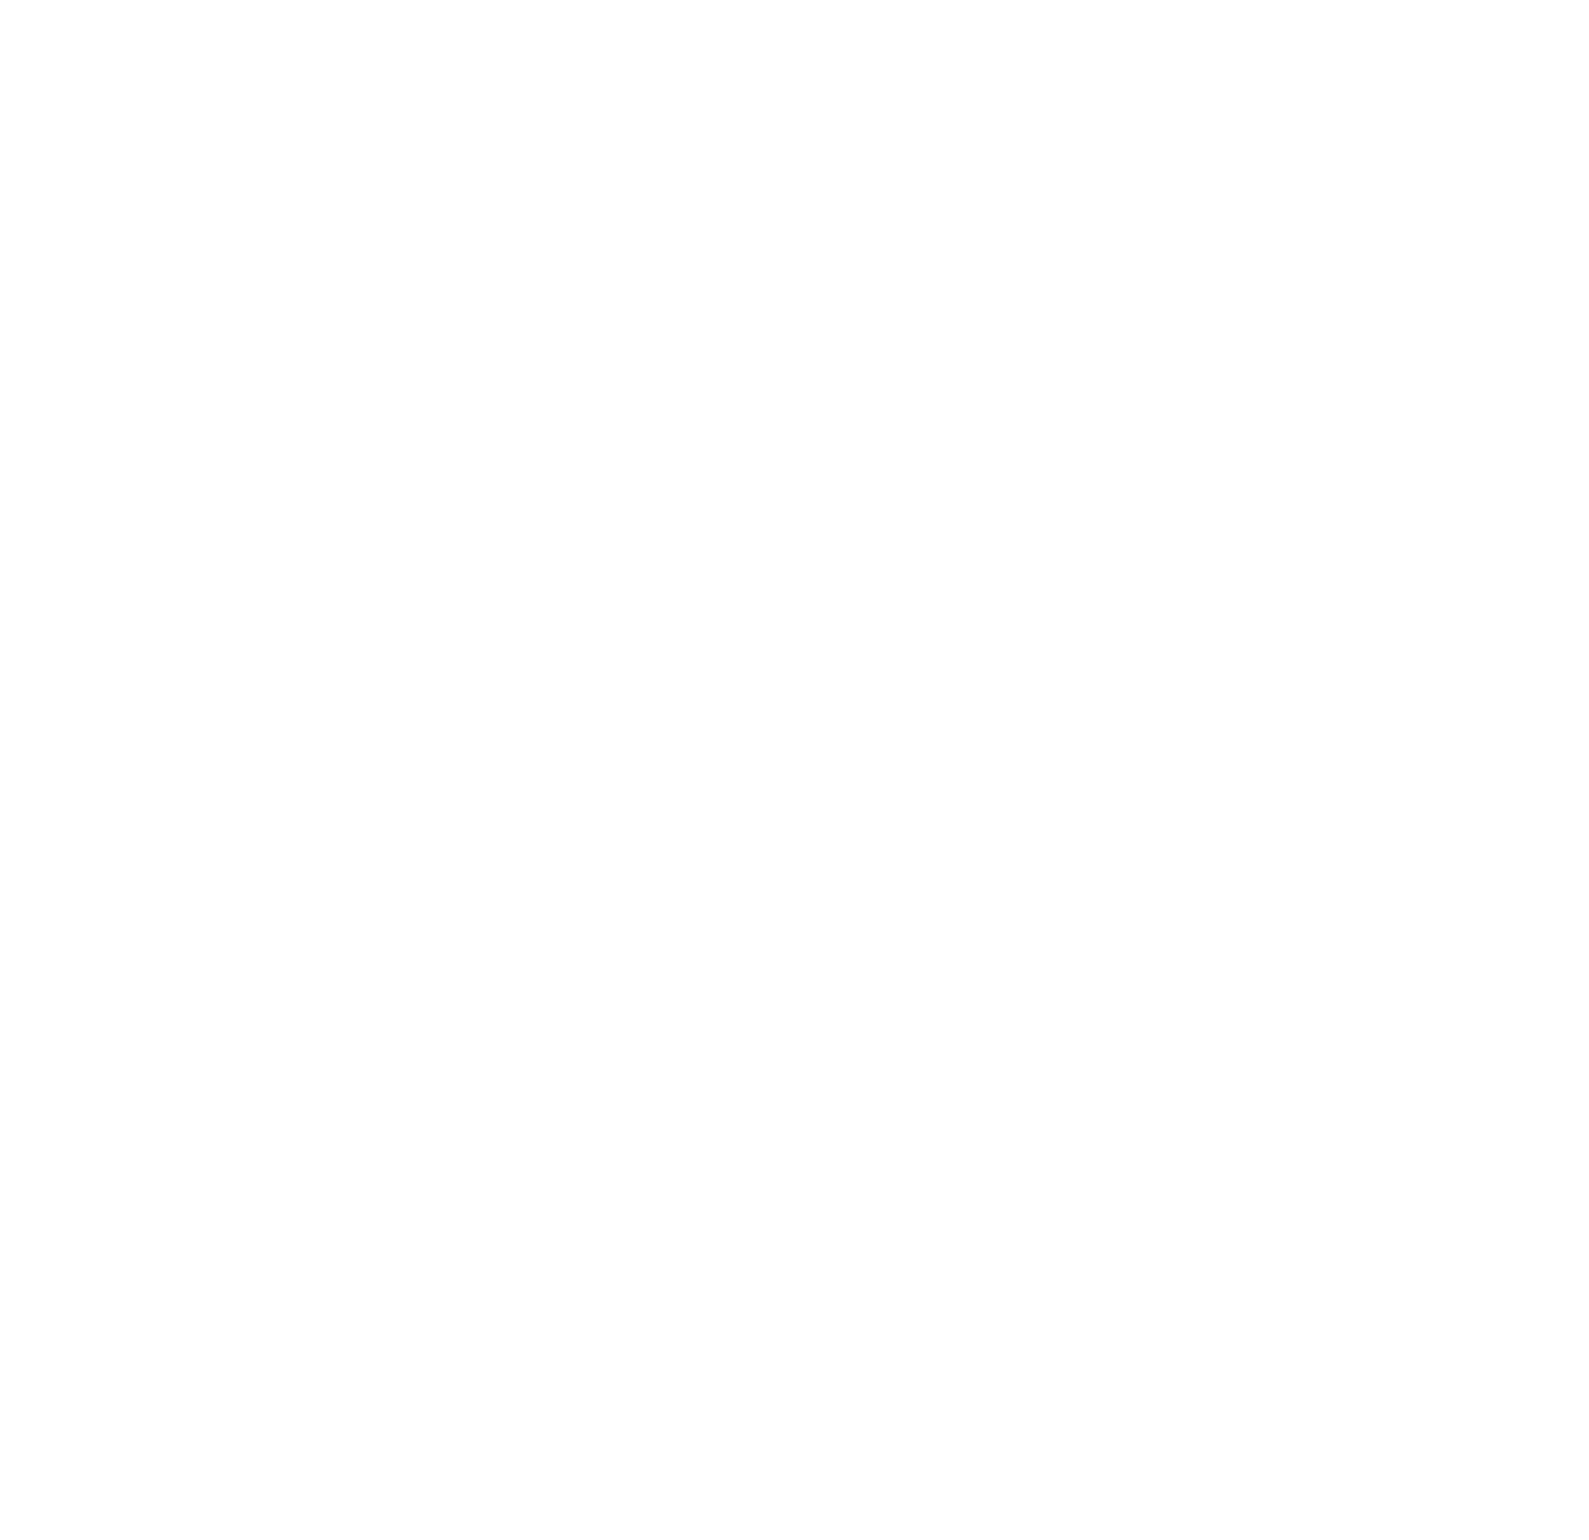 China Telecom logo pour fonds sombres (PNG transparent)